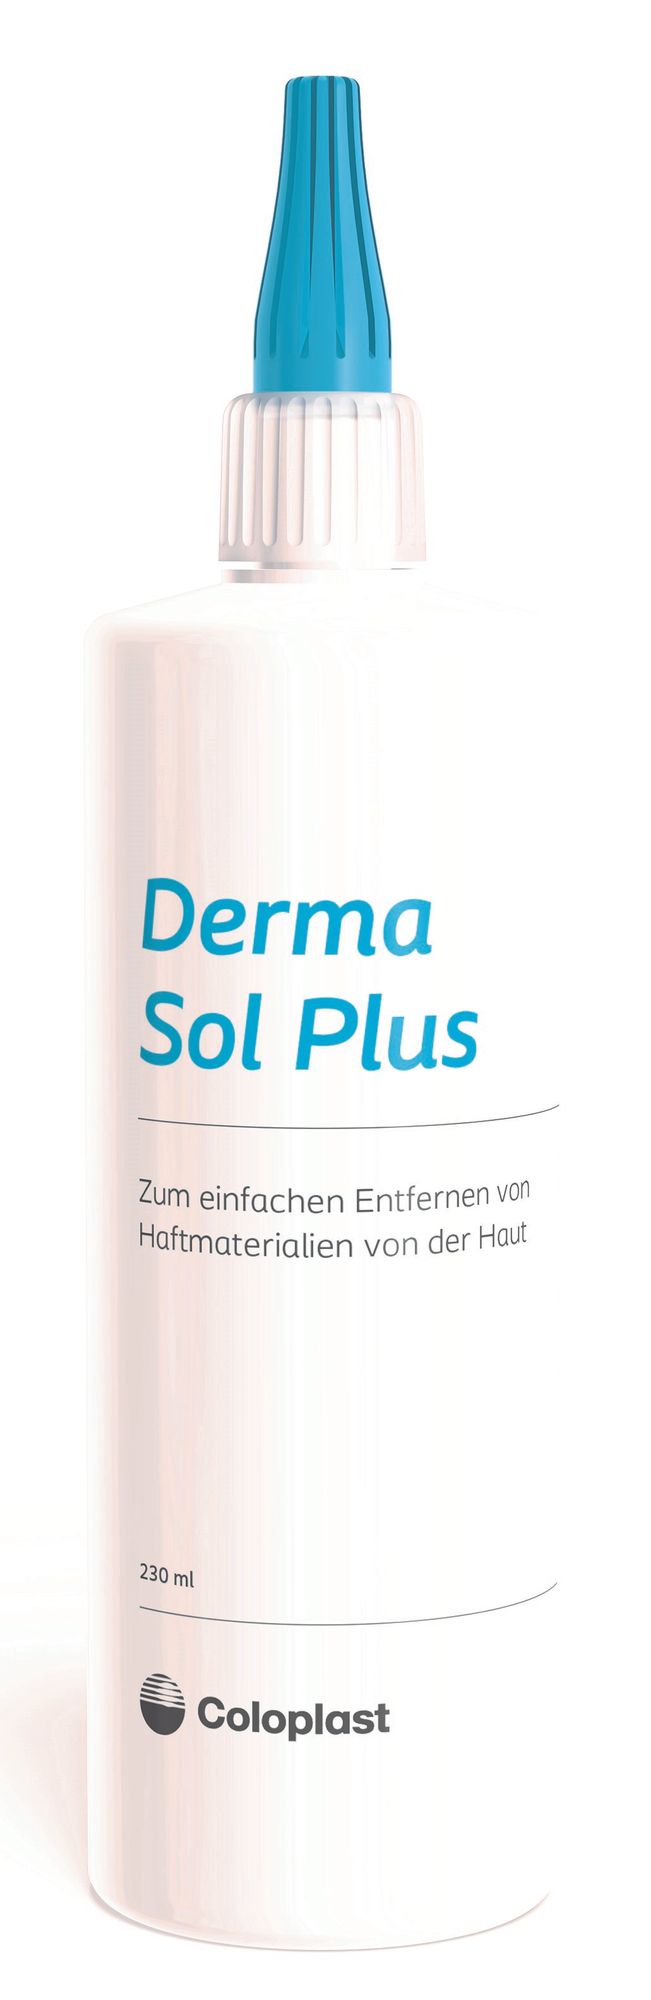 Aktionspaket - Coloplast Derma Sol Plus- 230ml Pflasterentferner + Vliwasoft Stomakompressen- 10x10cm- 4-fach- saugstarke Kompresse zur Stomapflege